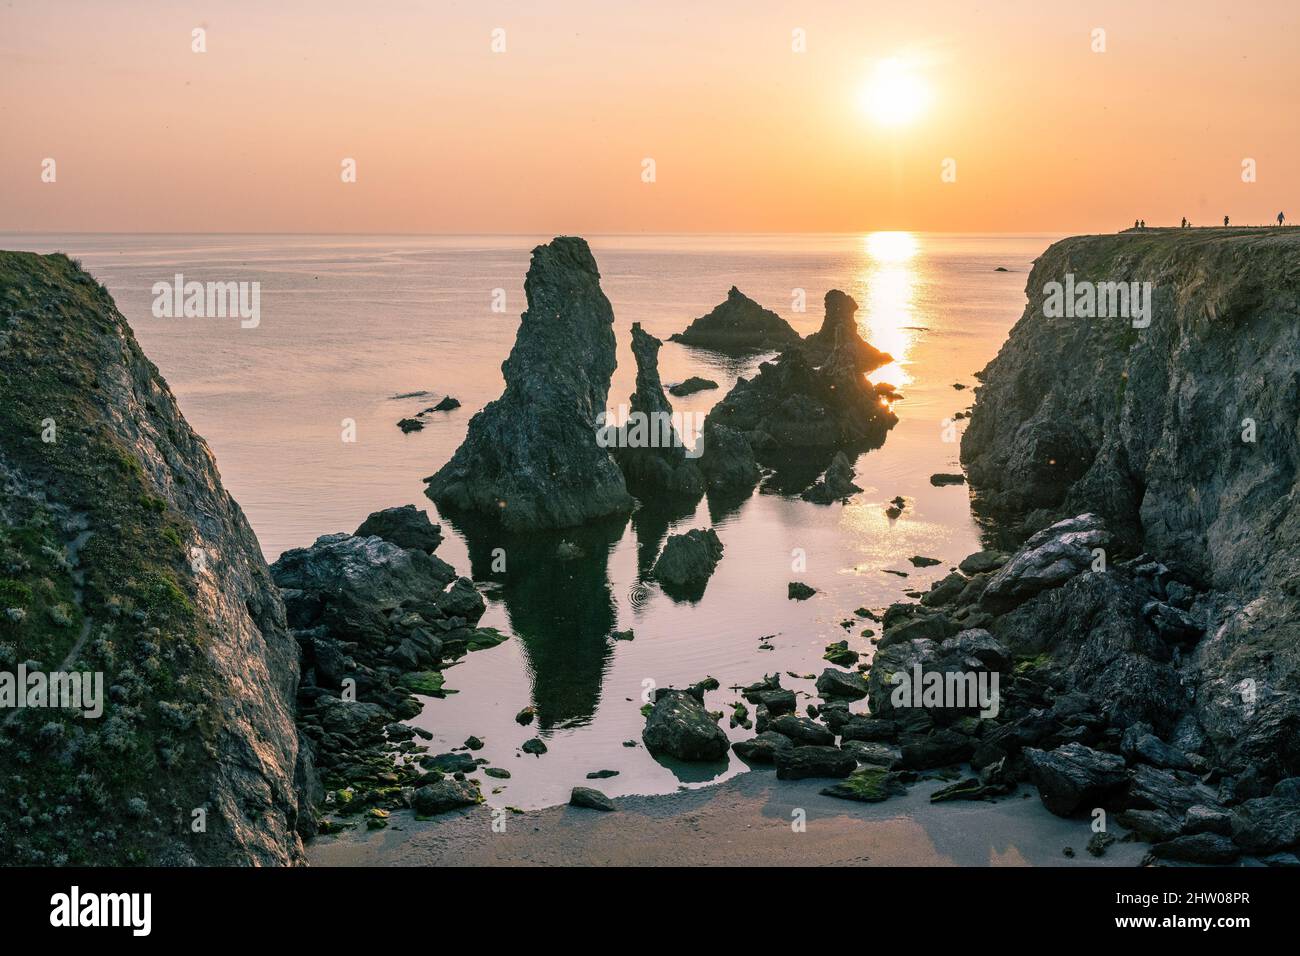 Les Aiguilles formazioni rocciose che sembrano aghi dal mare e sono stati motivi nei dipinti degli impressionisti. Foto Stock